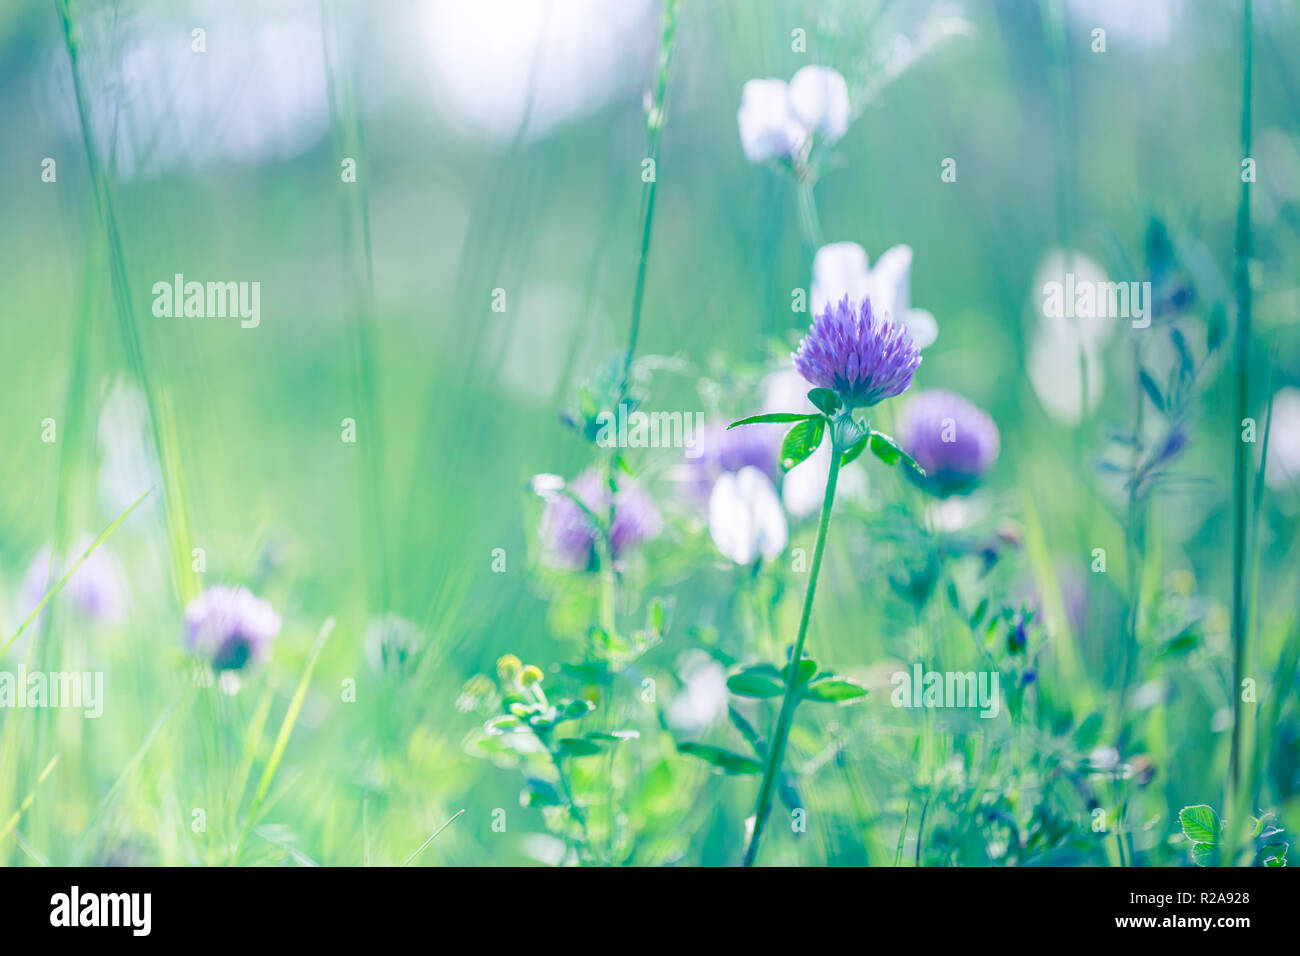 Abstrakte Natur Blumen und Wiese, Sonne über Frühling Sommer Nahaufnahme Hintergrund. Hell Blau und Grün mit lila Blüten Stockfoto